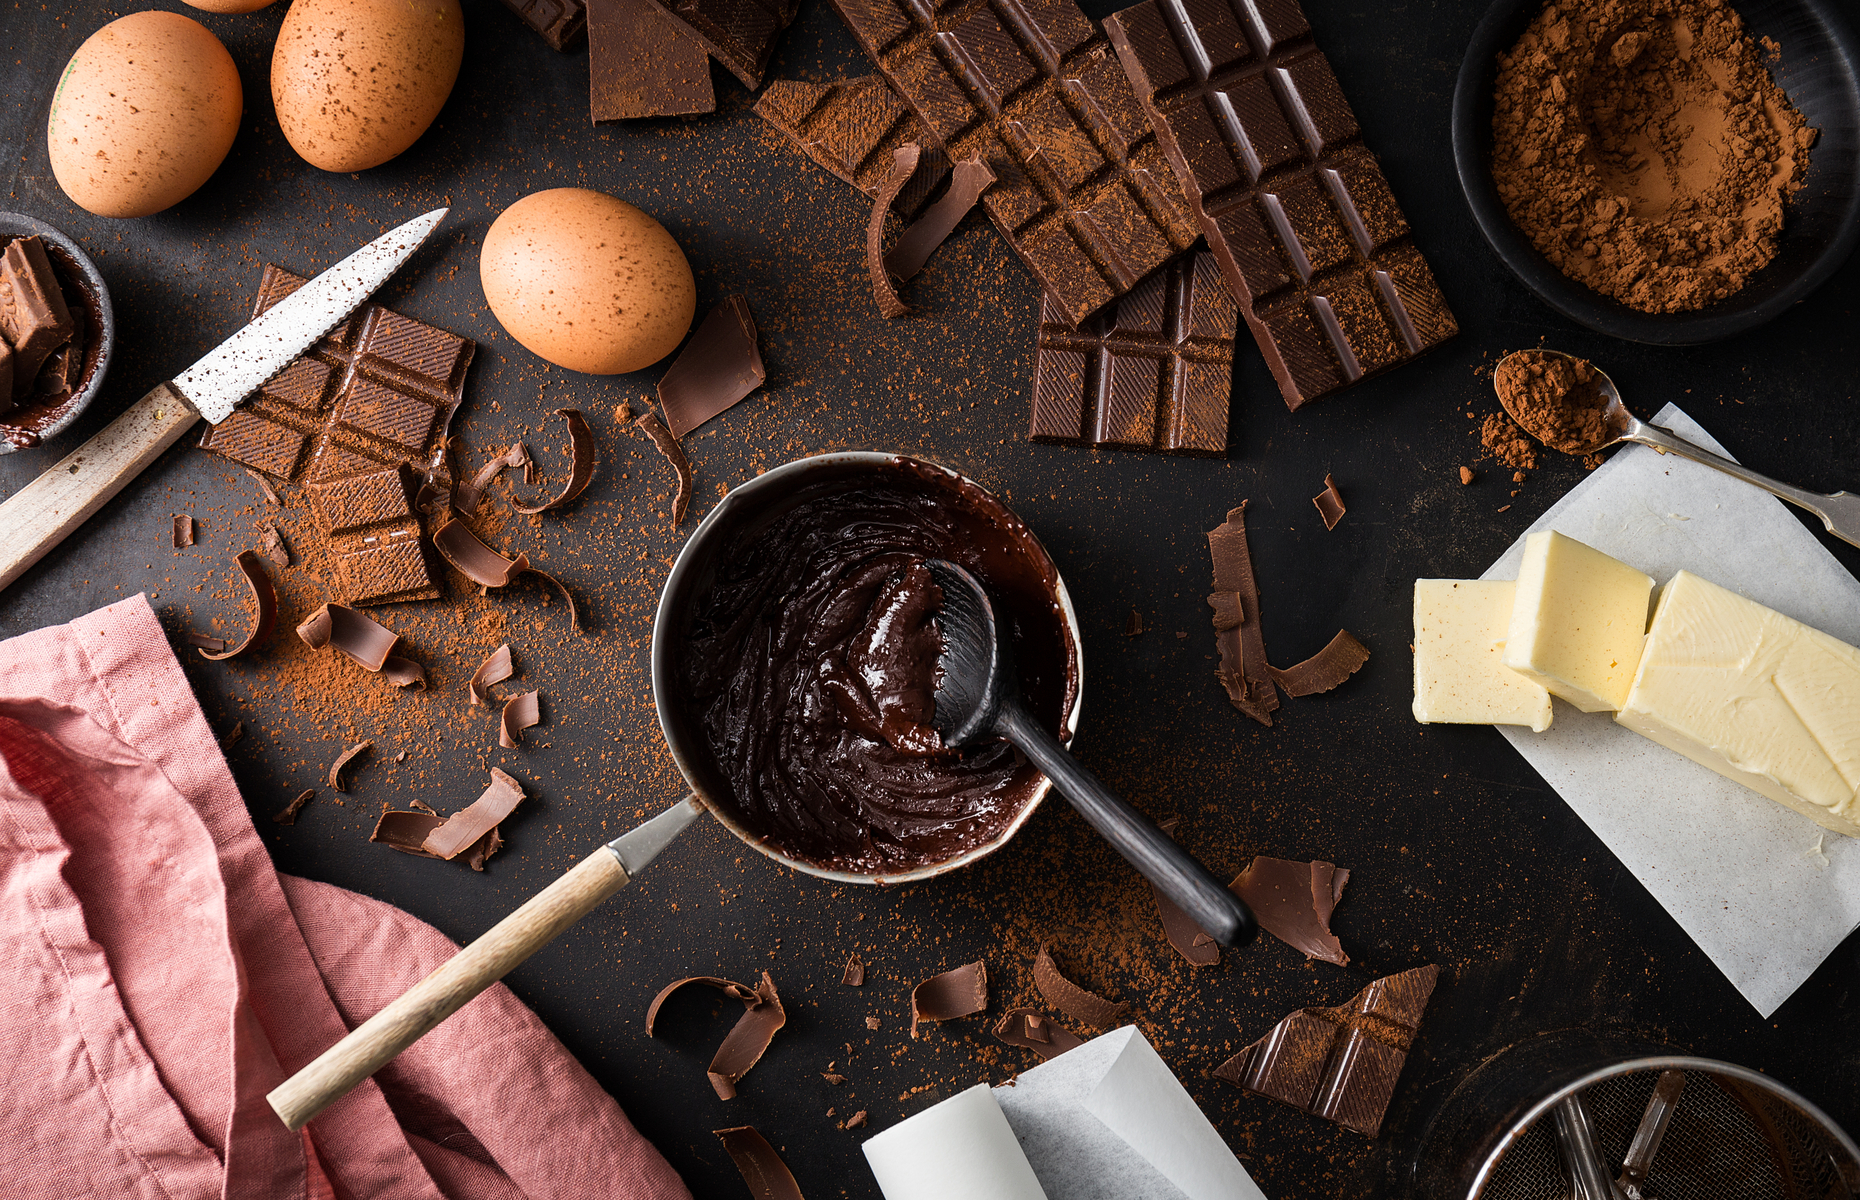 Brownie ingredients (Image: Valeria Aksakova/Shutterstock)